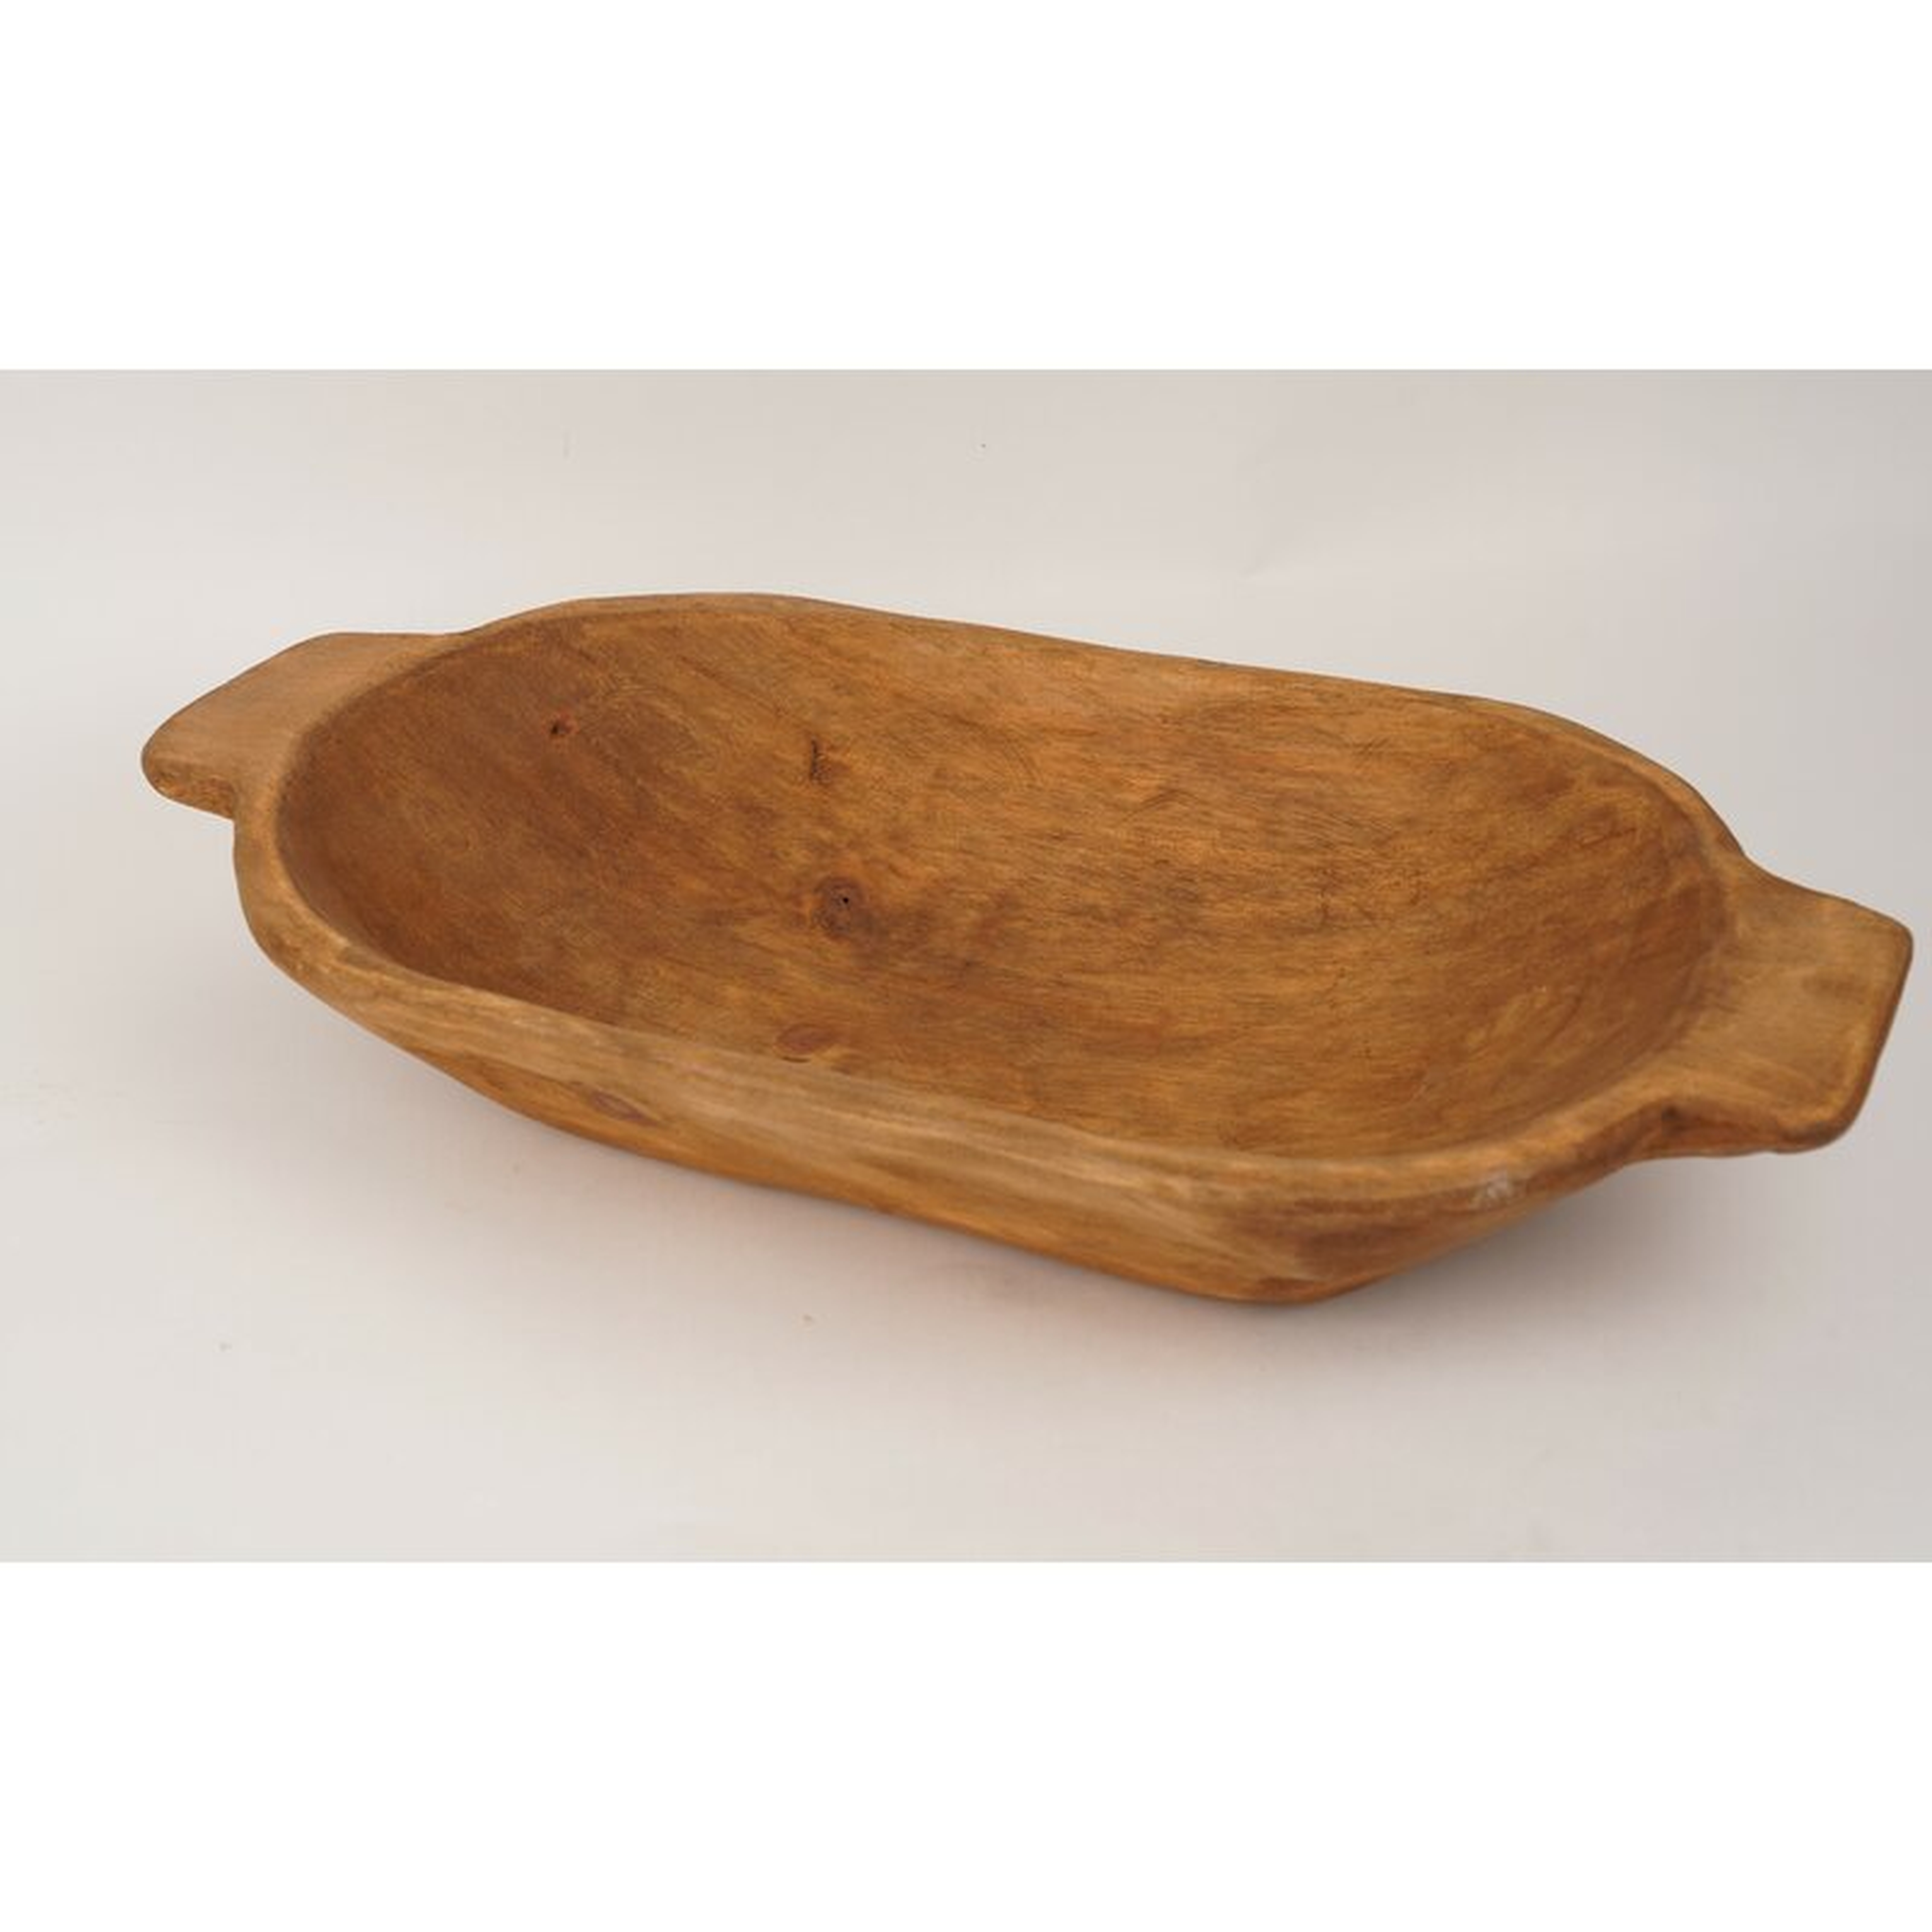 Shevlin Wood Decorative Bowl - Wayfair